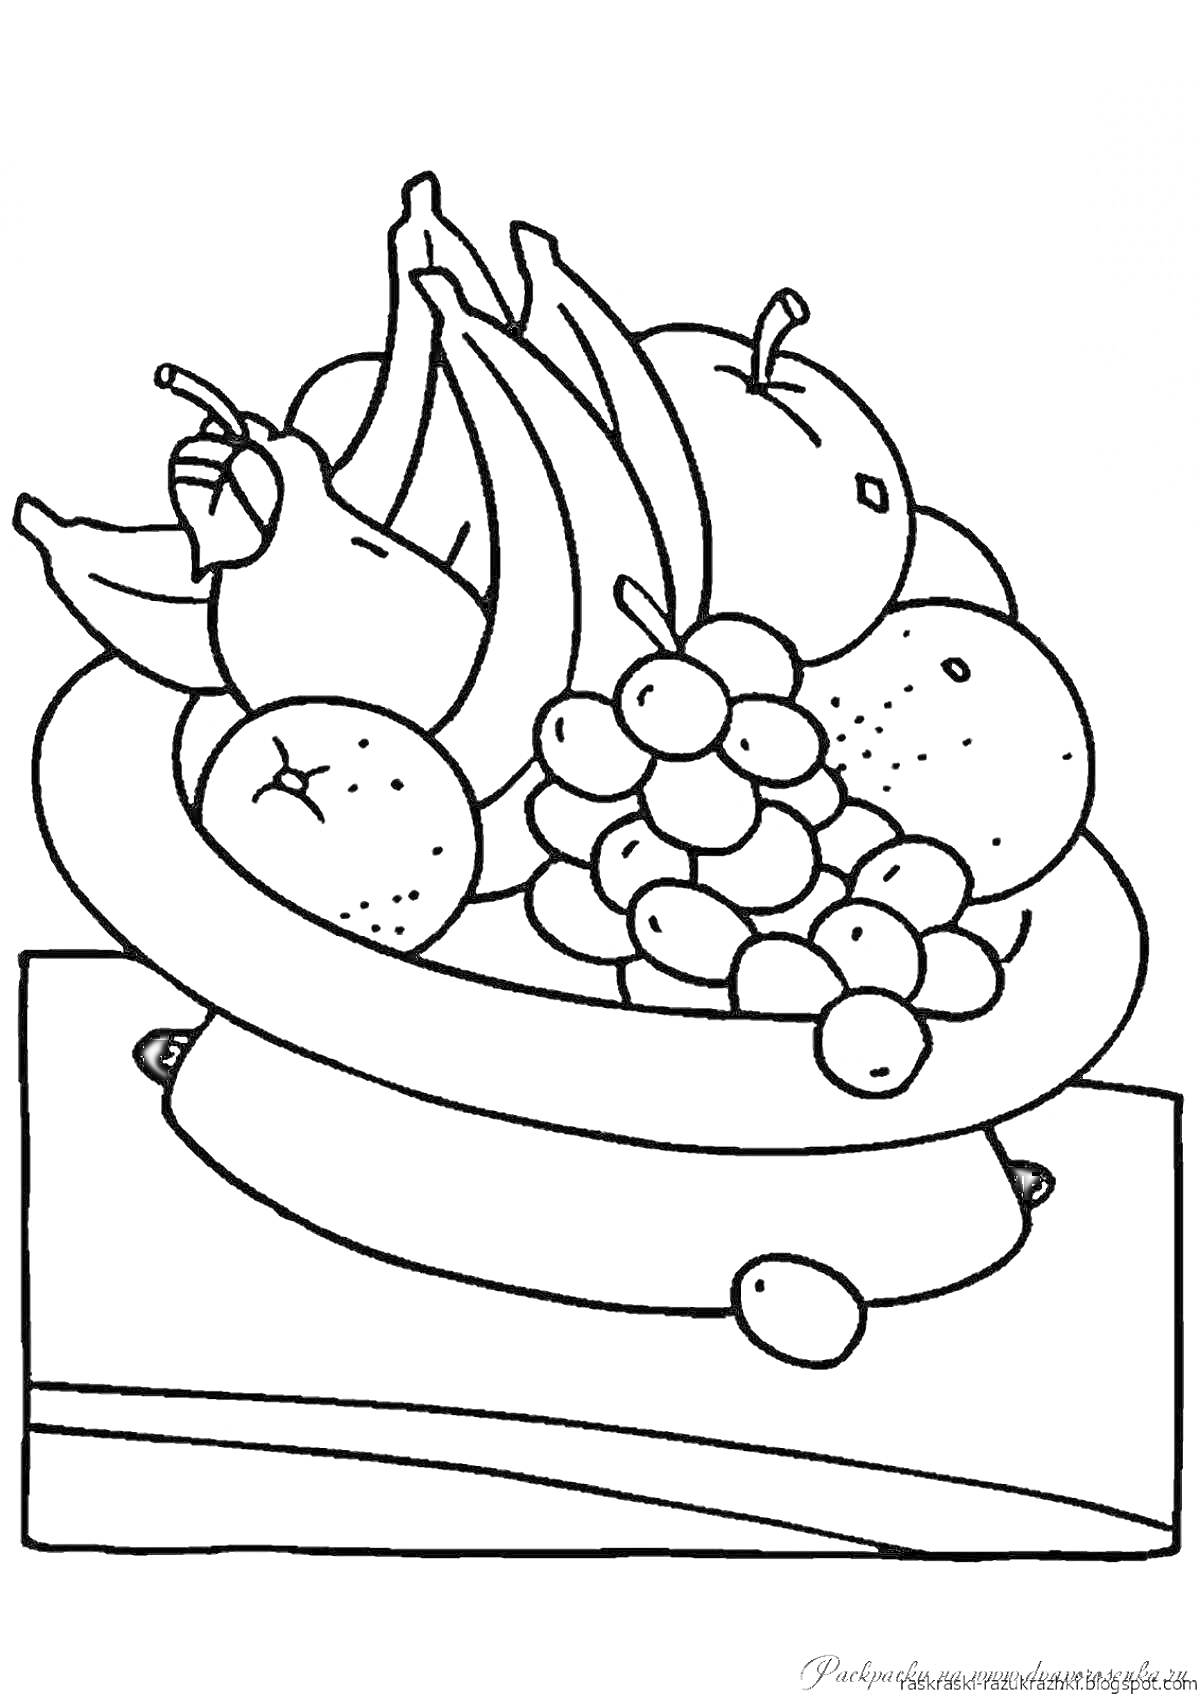 Раскраска Фрукты в вазе: бананы, груши, яблоки, апельсины и виноград